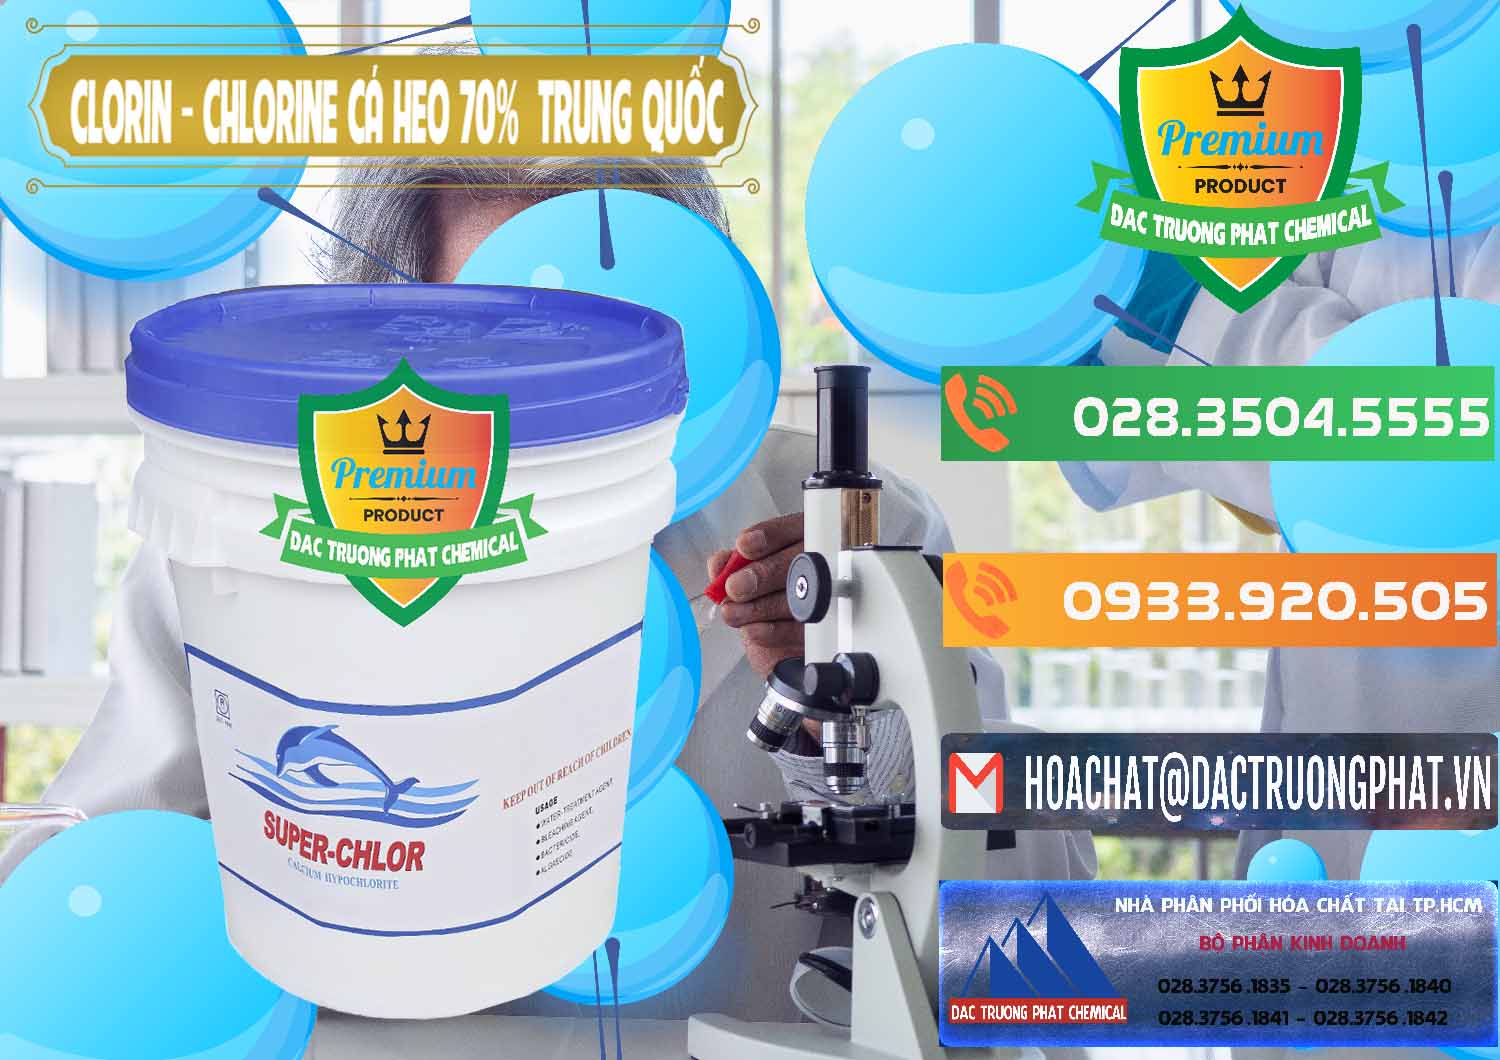 Bán & phân phối Clorin - Chlorine Cá Heo 70% Super Chlor Nắp Xanh Trung Quốc China - 0209 - Phân phối _ bán hóa chất tại TP.HCM - hoachatxulynuoc.com.vn